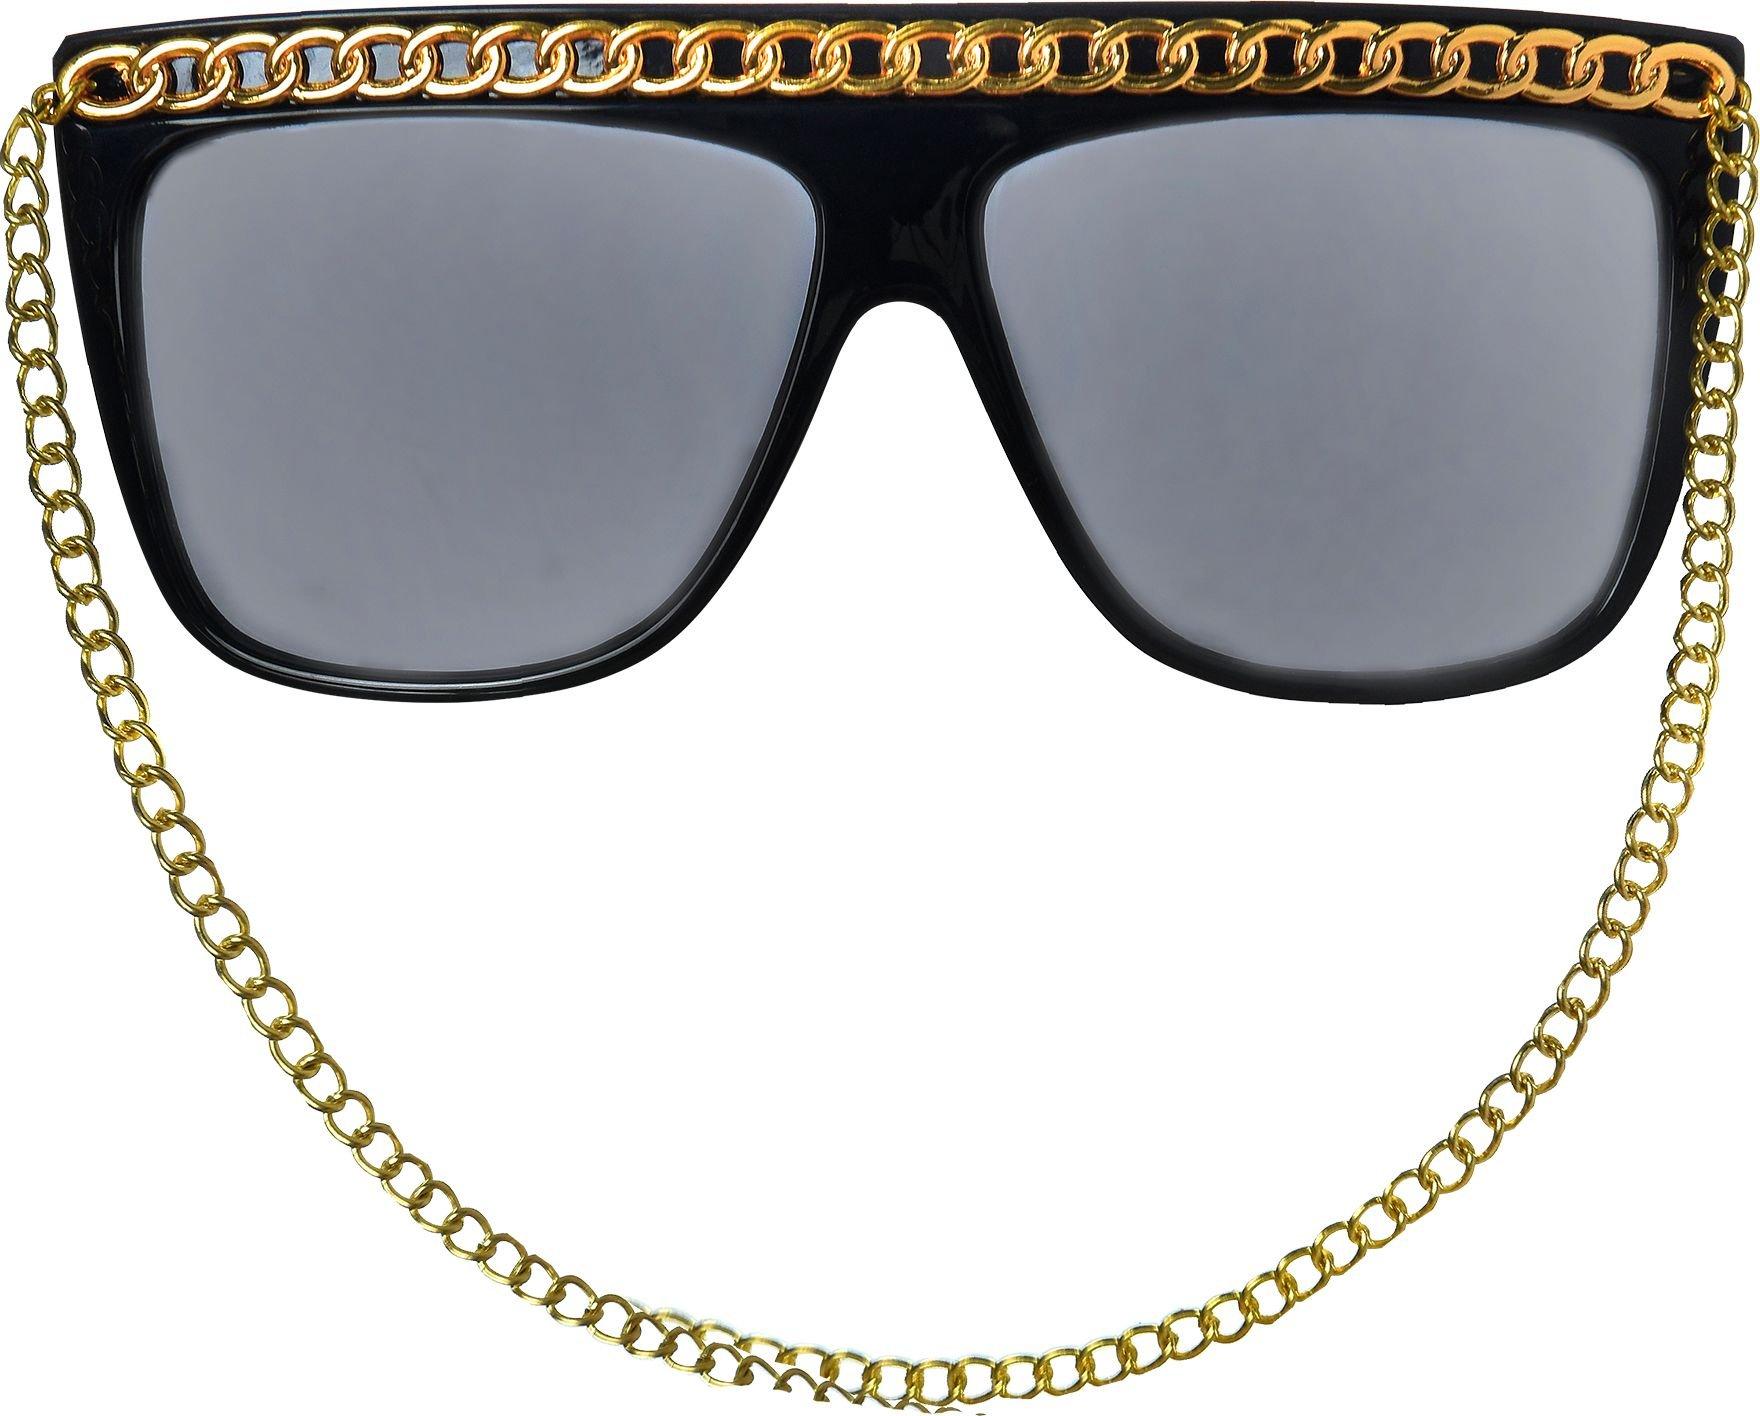 Unisex 'Common' Rapper Square Flat Brow Sunglasses Astroshadez –